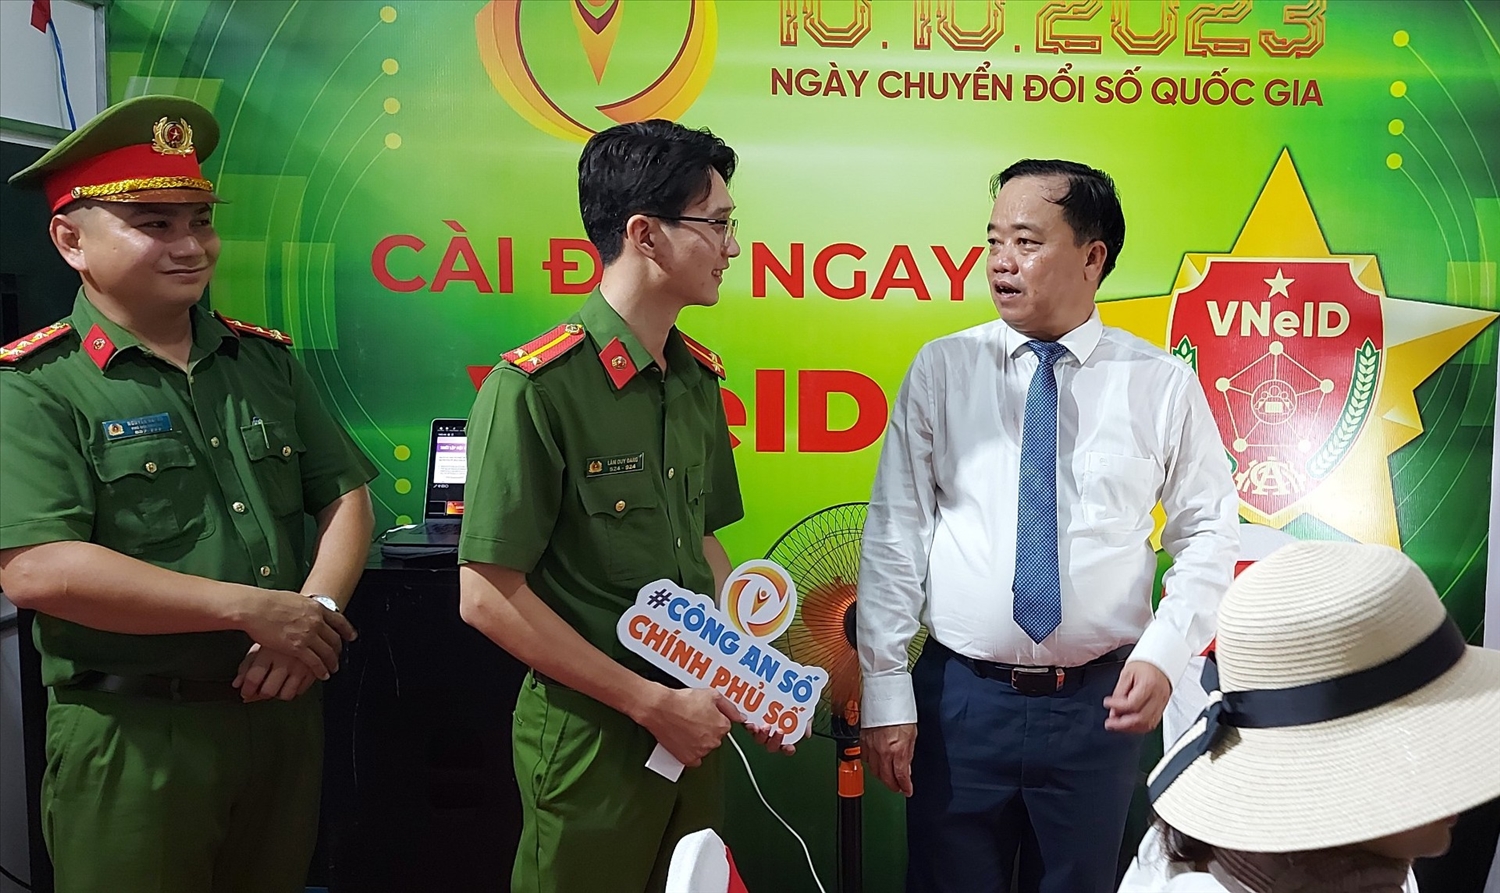 Chủ tịch UBND tỉnh Cà Mau - Huỳnh Quốc Việt thăm gian hàng trưng bày của Công an tỉnh hưởng ứng Ngày Chuyển đổi số quốc gia